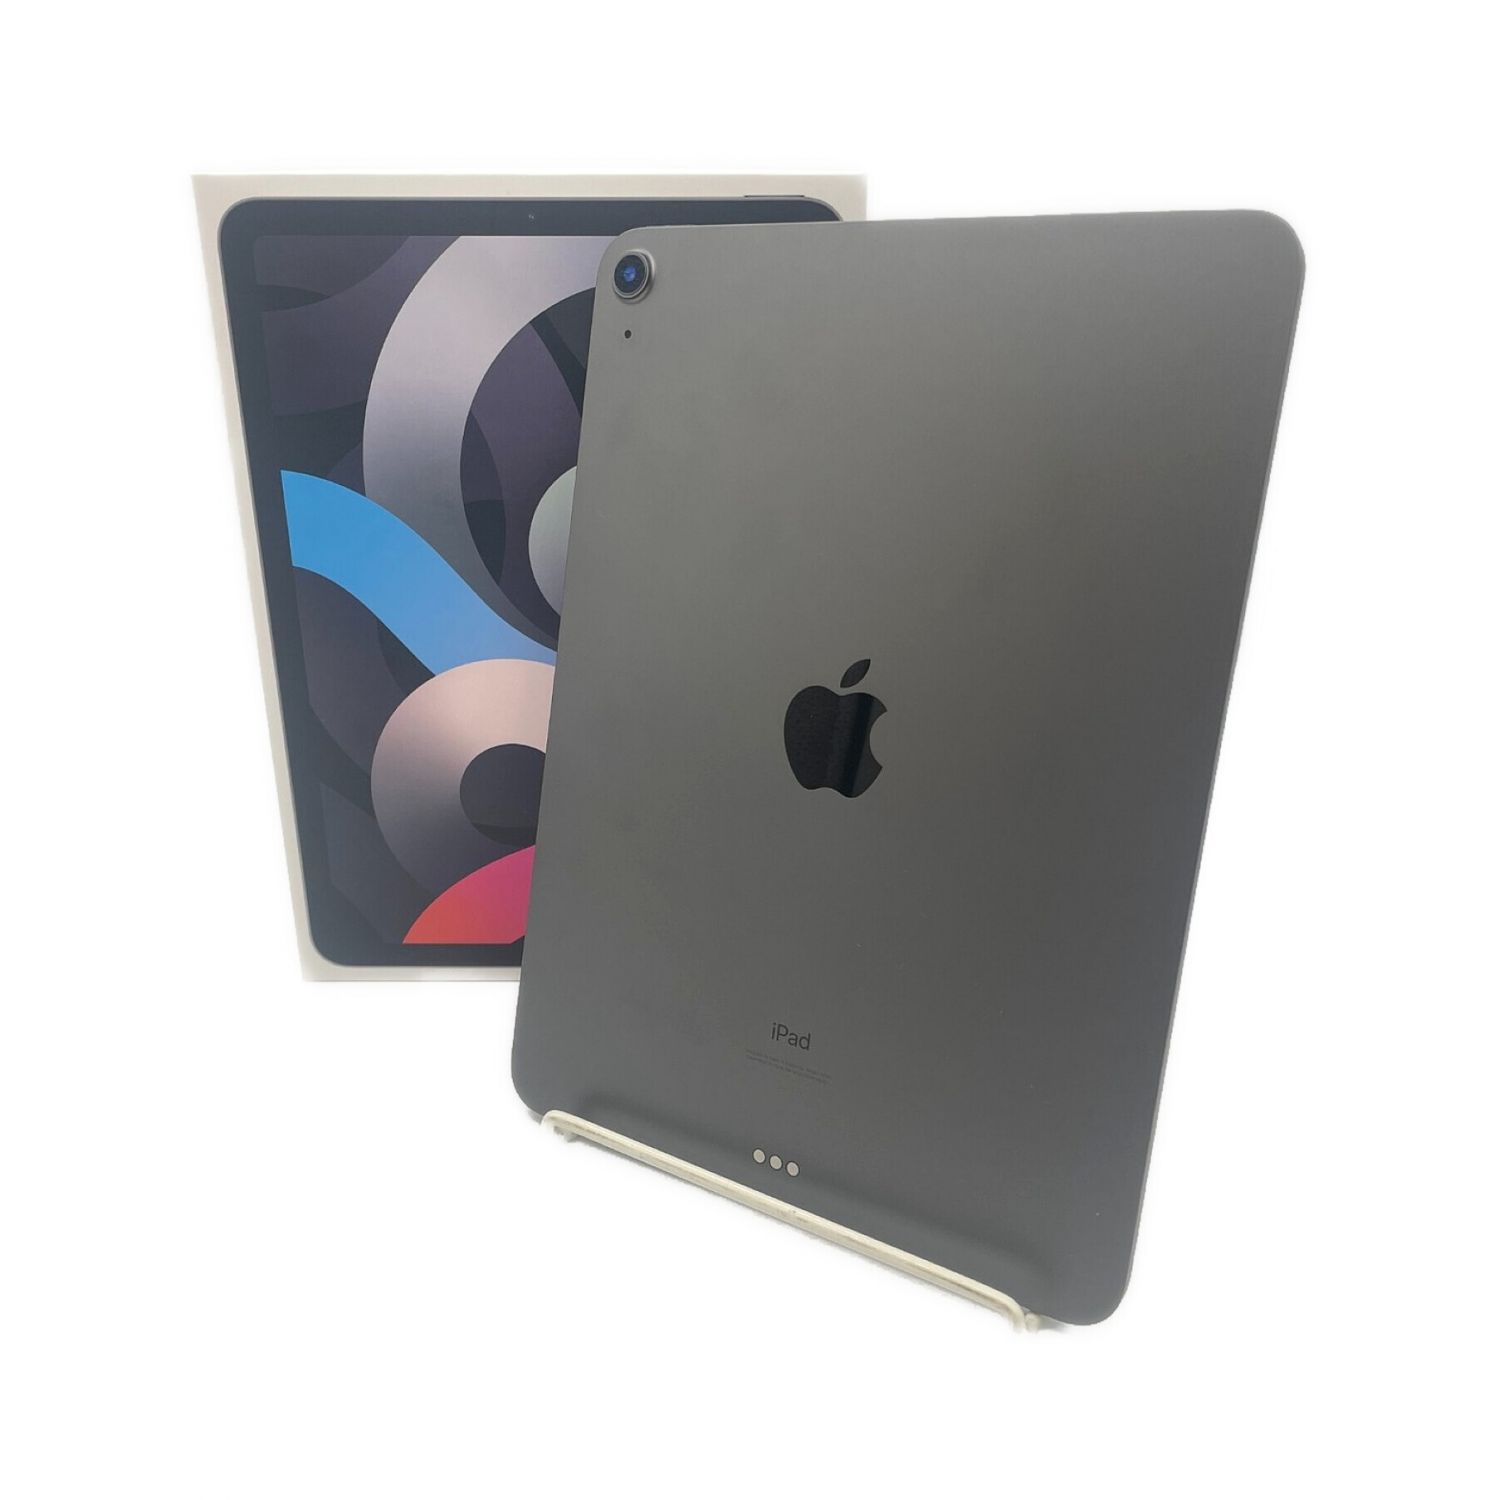 Apple (アップル) iPad Air(第4世代) WI-FI モデル スペースグレイ